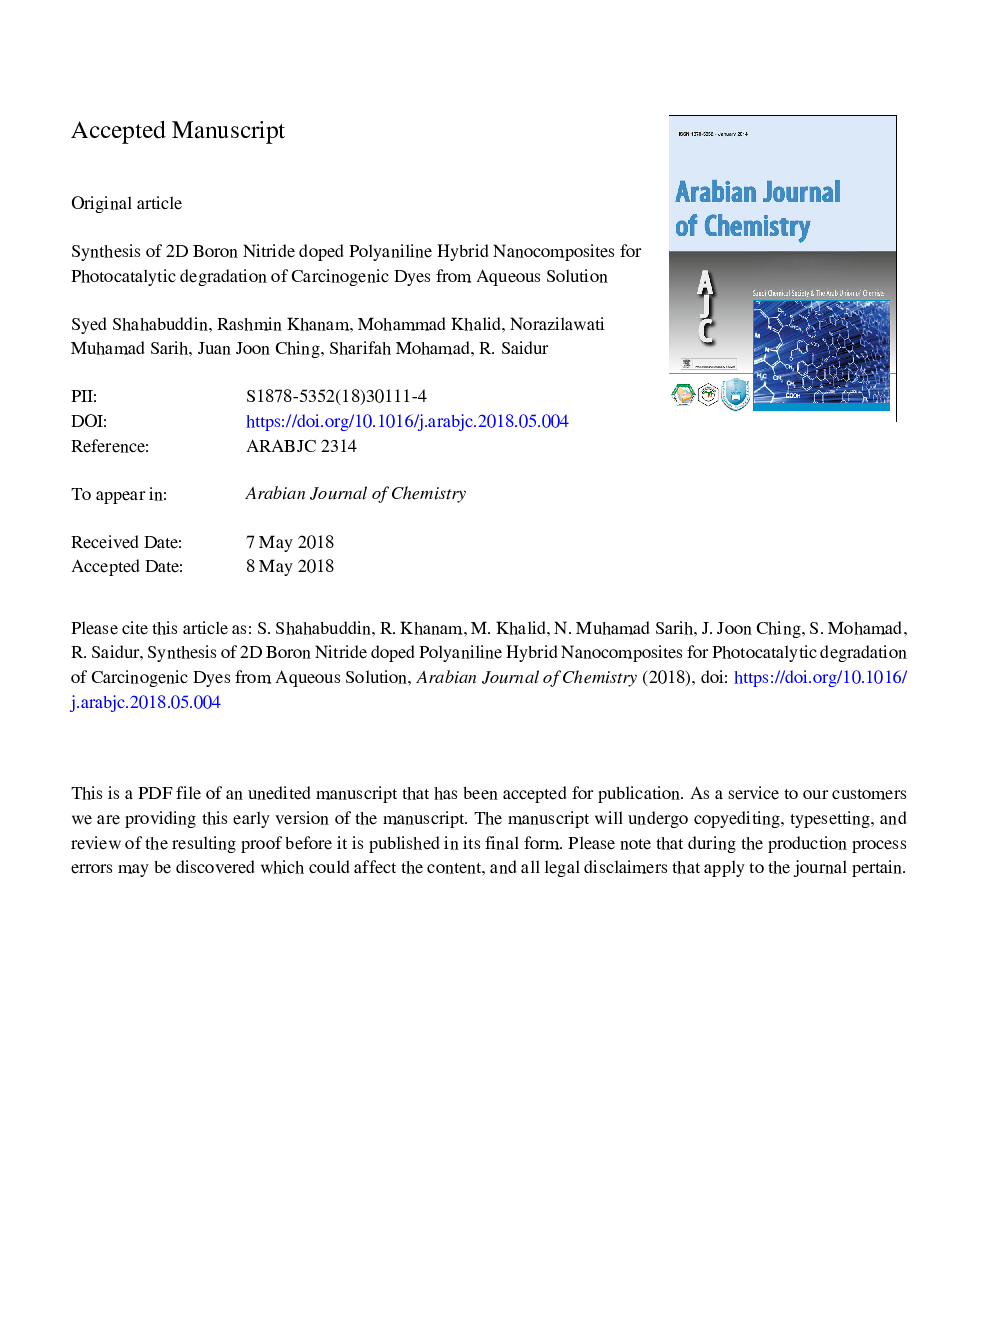 سنتز نانوکامپوزیت های هیبرید دوتایی دوتایی نیترید پلی وینیلین برای تخریب فتوکاتالیستی رنگ سرطان زایی از محلول آبی